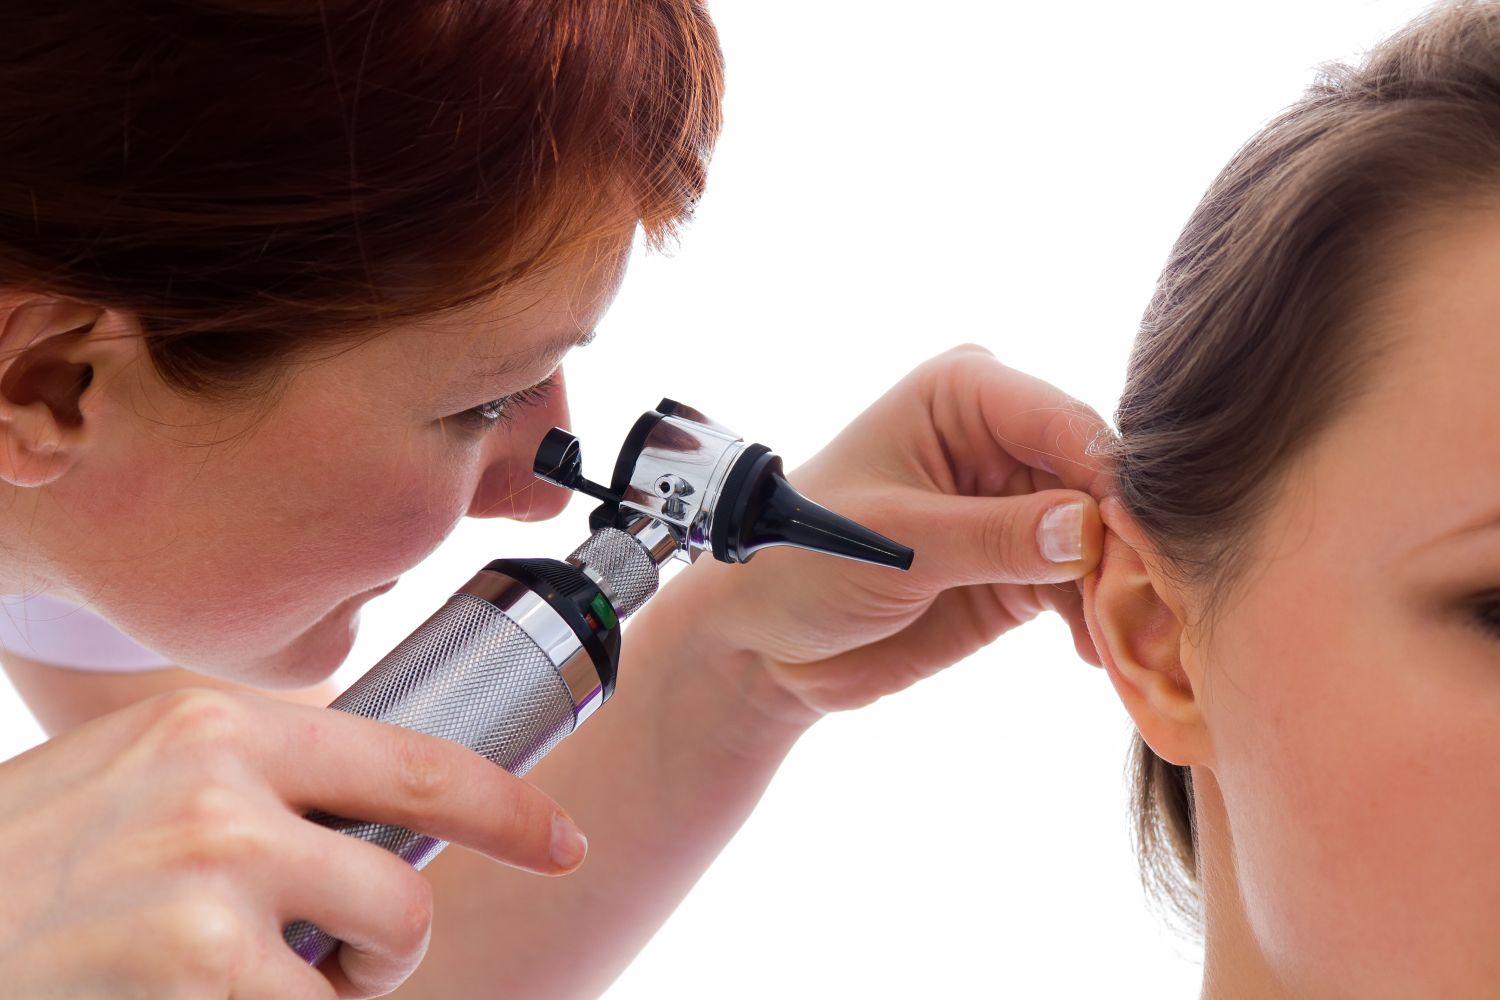  Eine Ärztin untersucht das Ohr einer Patientin. Thema: Ohrenschmalz entfernen